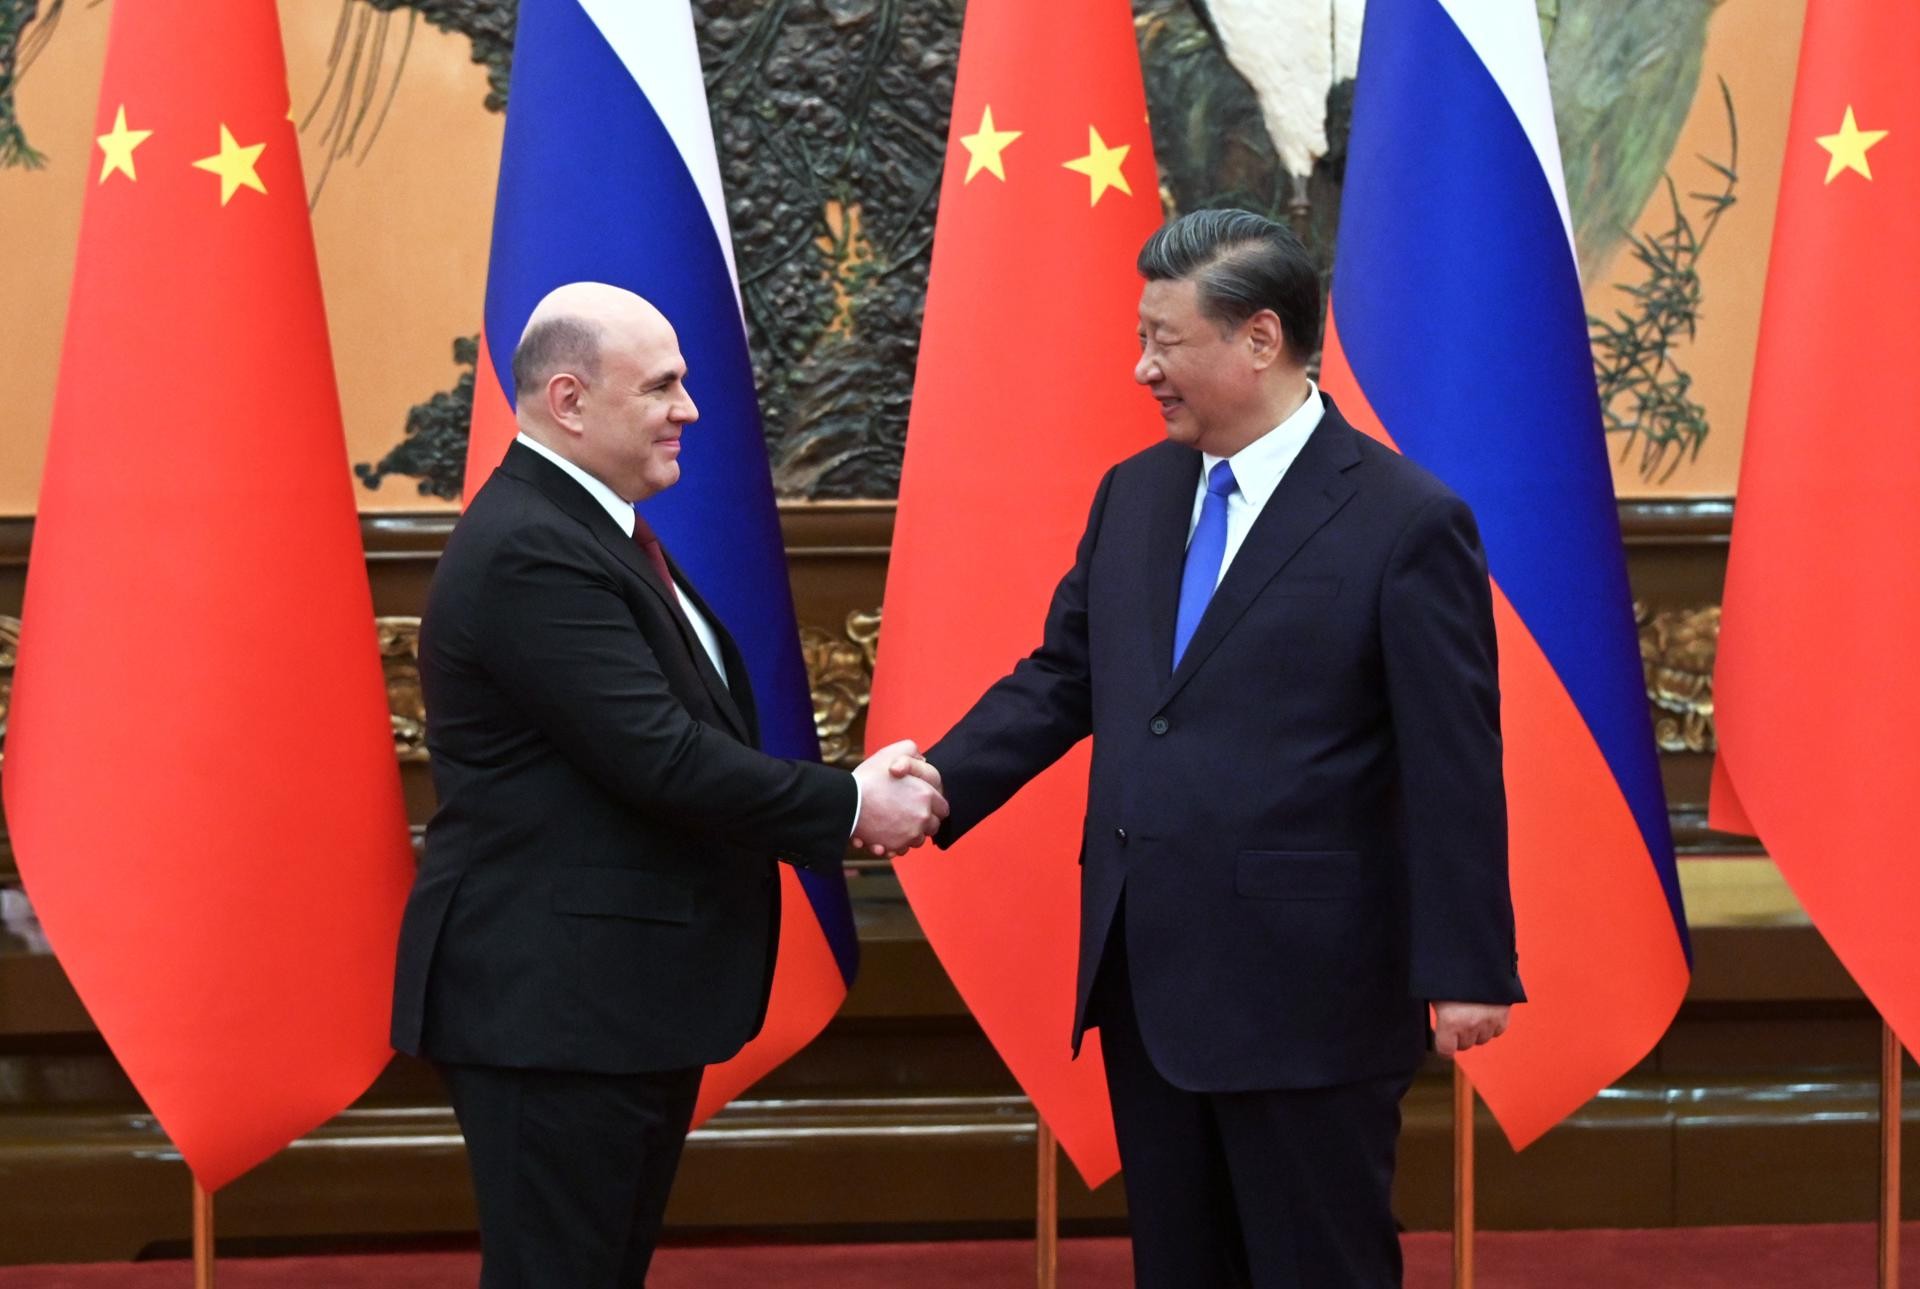 Thủ tướng Nga gặp Chủ tịch Trung Quốc: Tỏ trân trọng quan hệ với Bắc Kinh, tuyên bố 'kề vai sát cánh' (Nguồn: Sputnik)